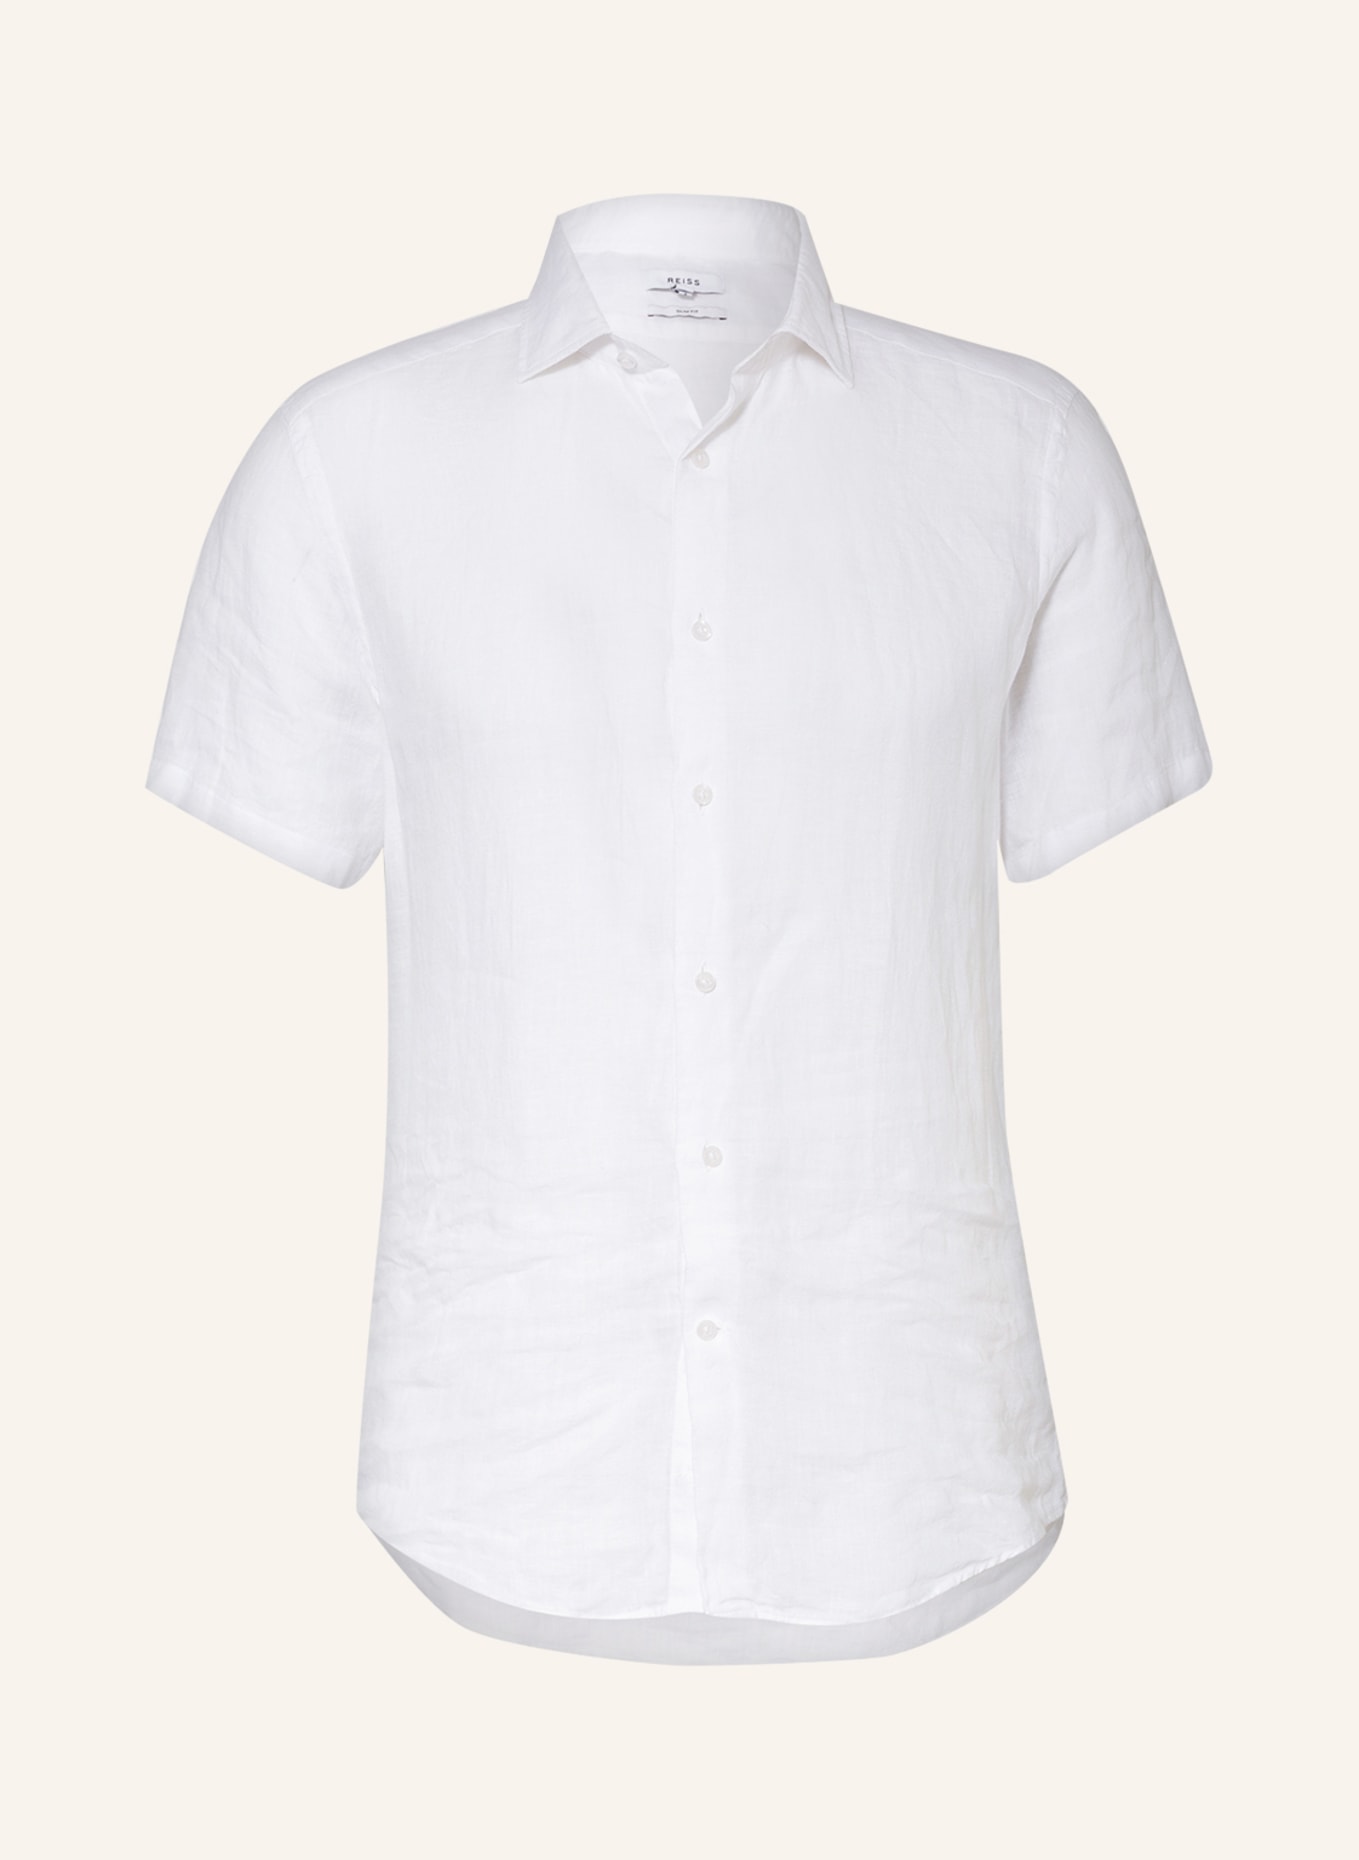 REISS Kurzarmhemd HOLIDAY Slim Fit aus Leinen, Farbe: WEISS (Bild 1)